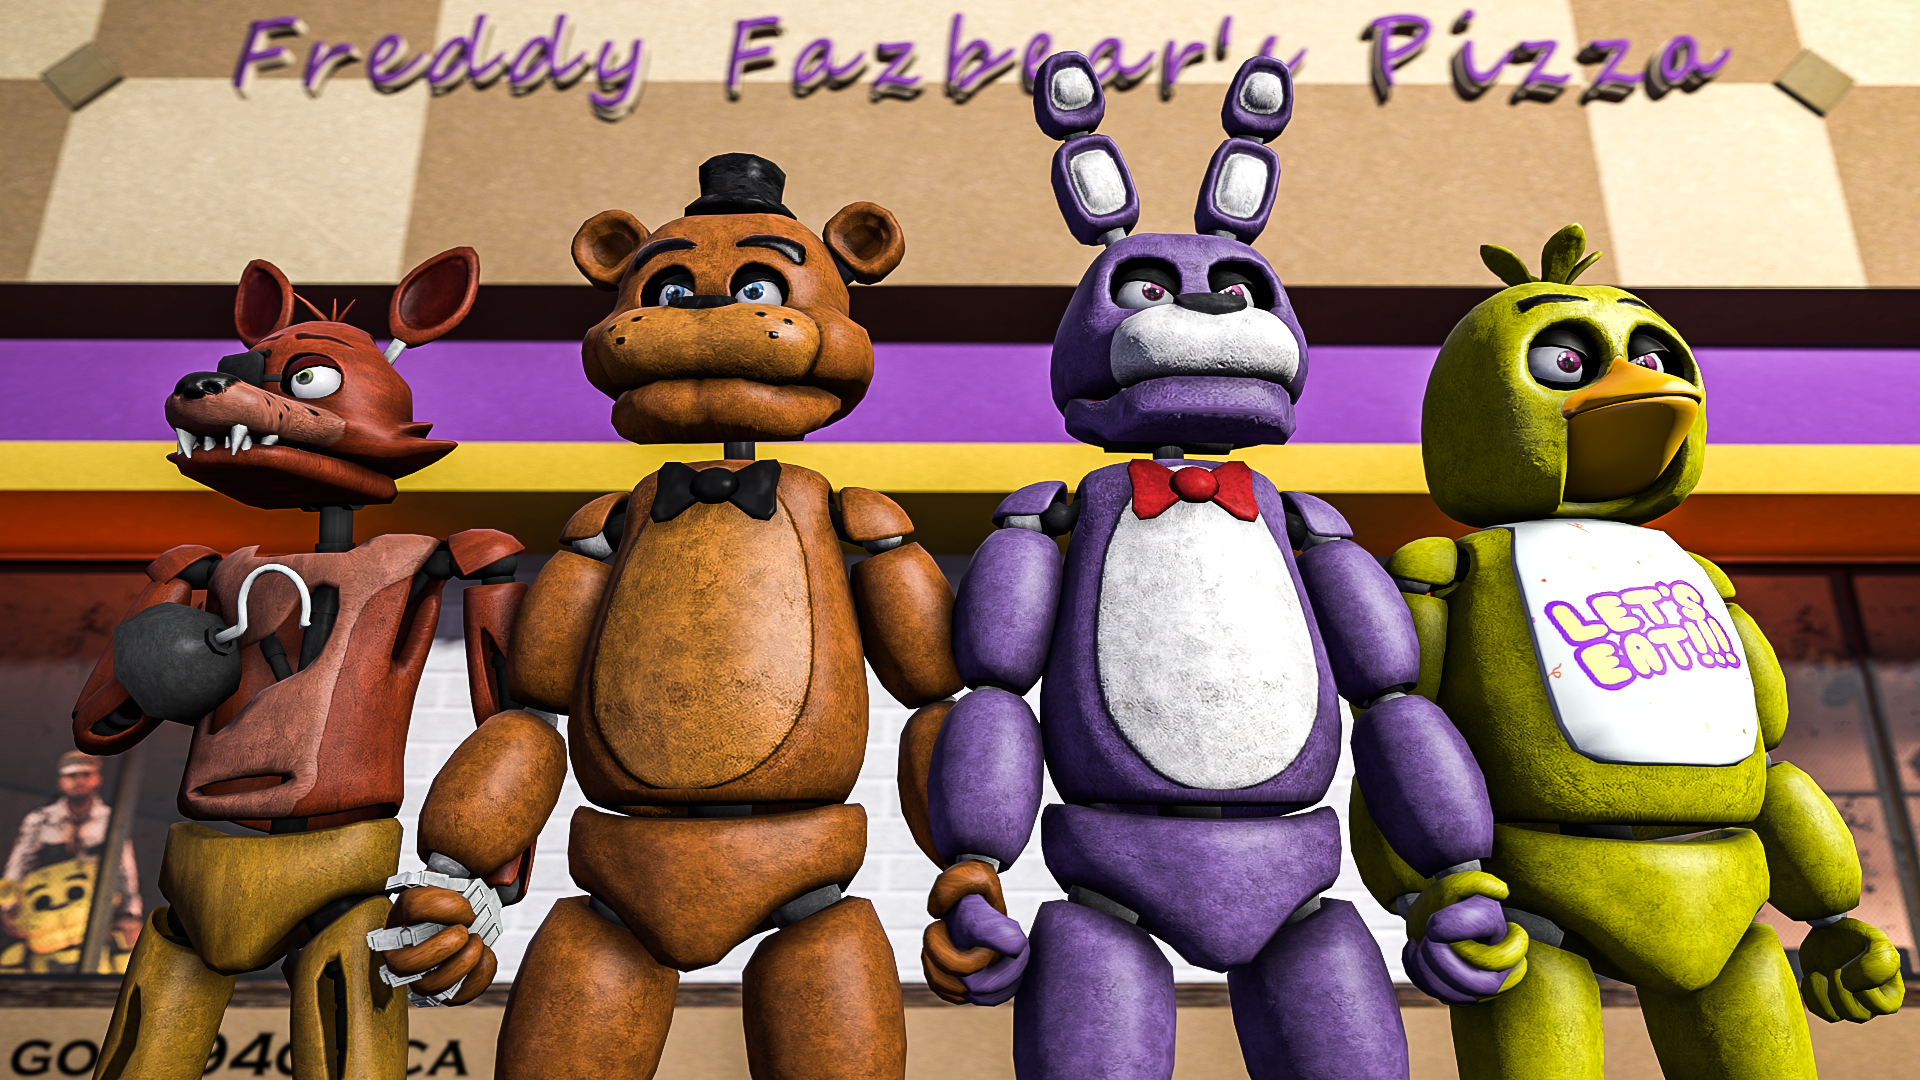 Freddy, FNAF 1 [Digital Art]